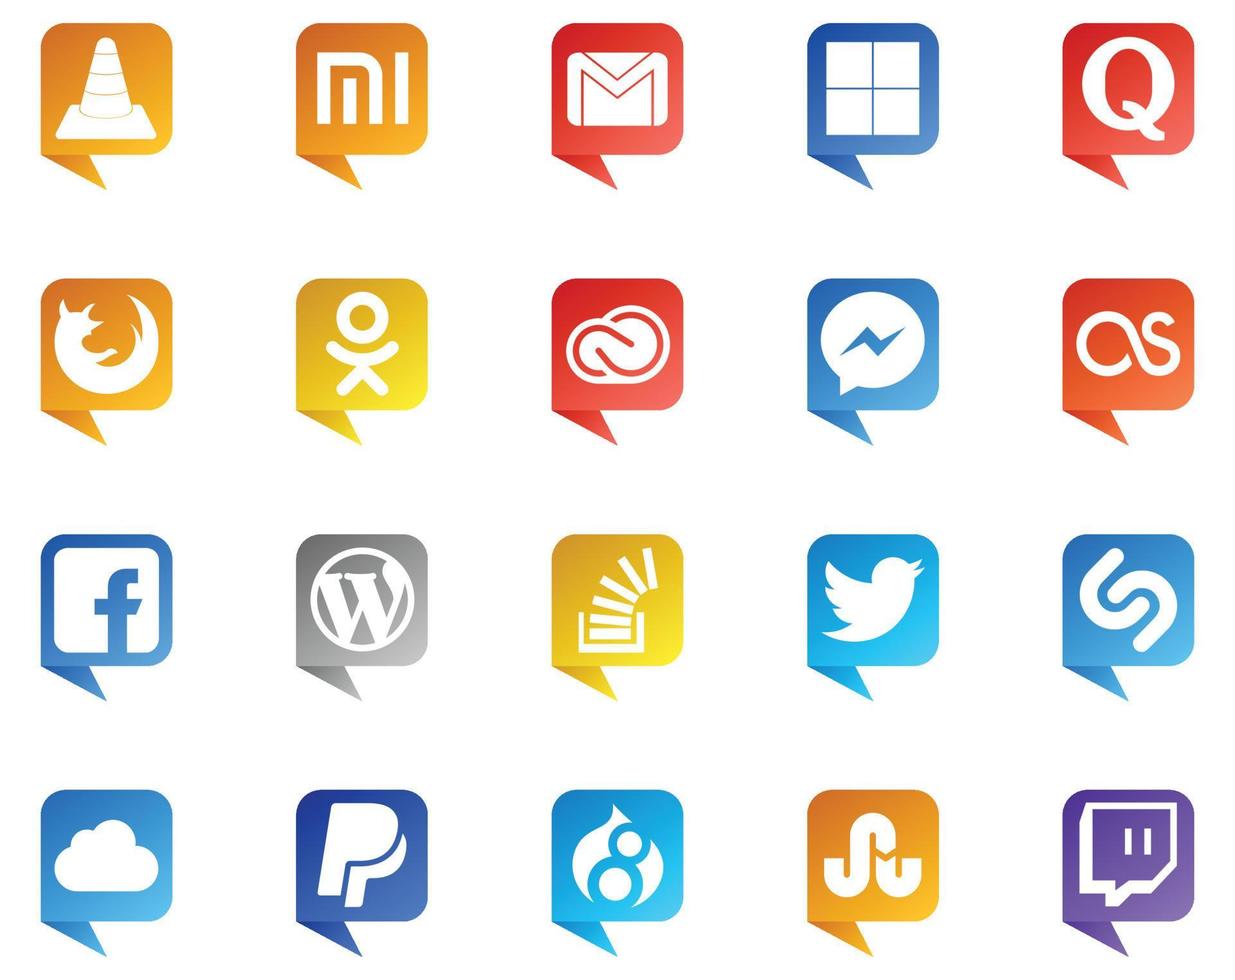 20 Logo im Sprechblasenstil für soziale Medien wie lastfm adobe quora cc odnoklassniki vektor